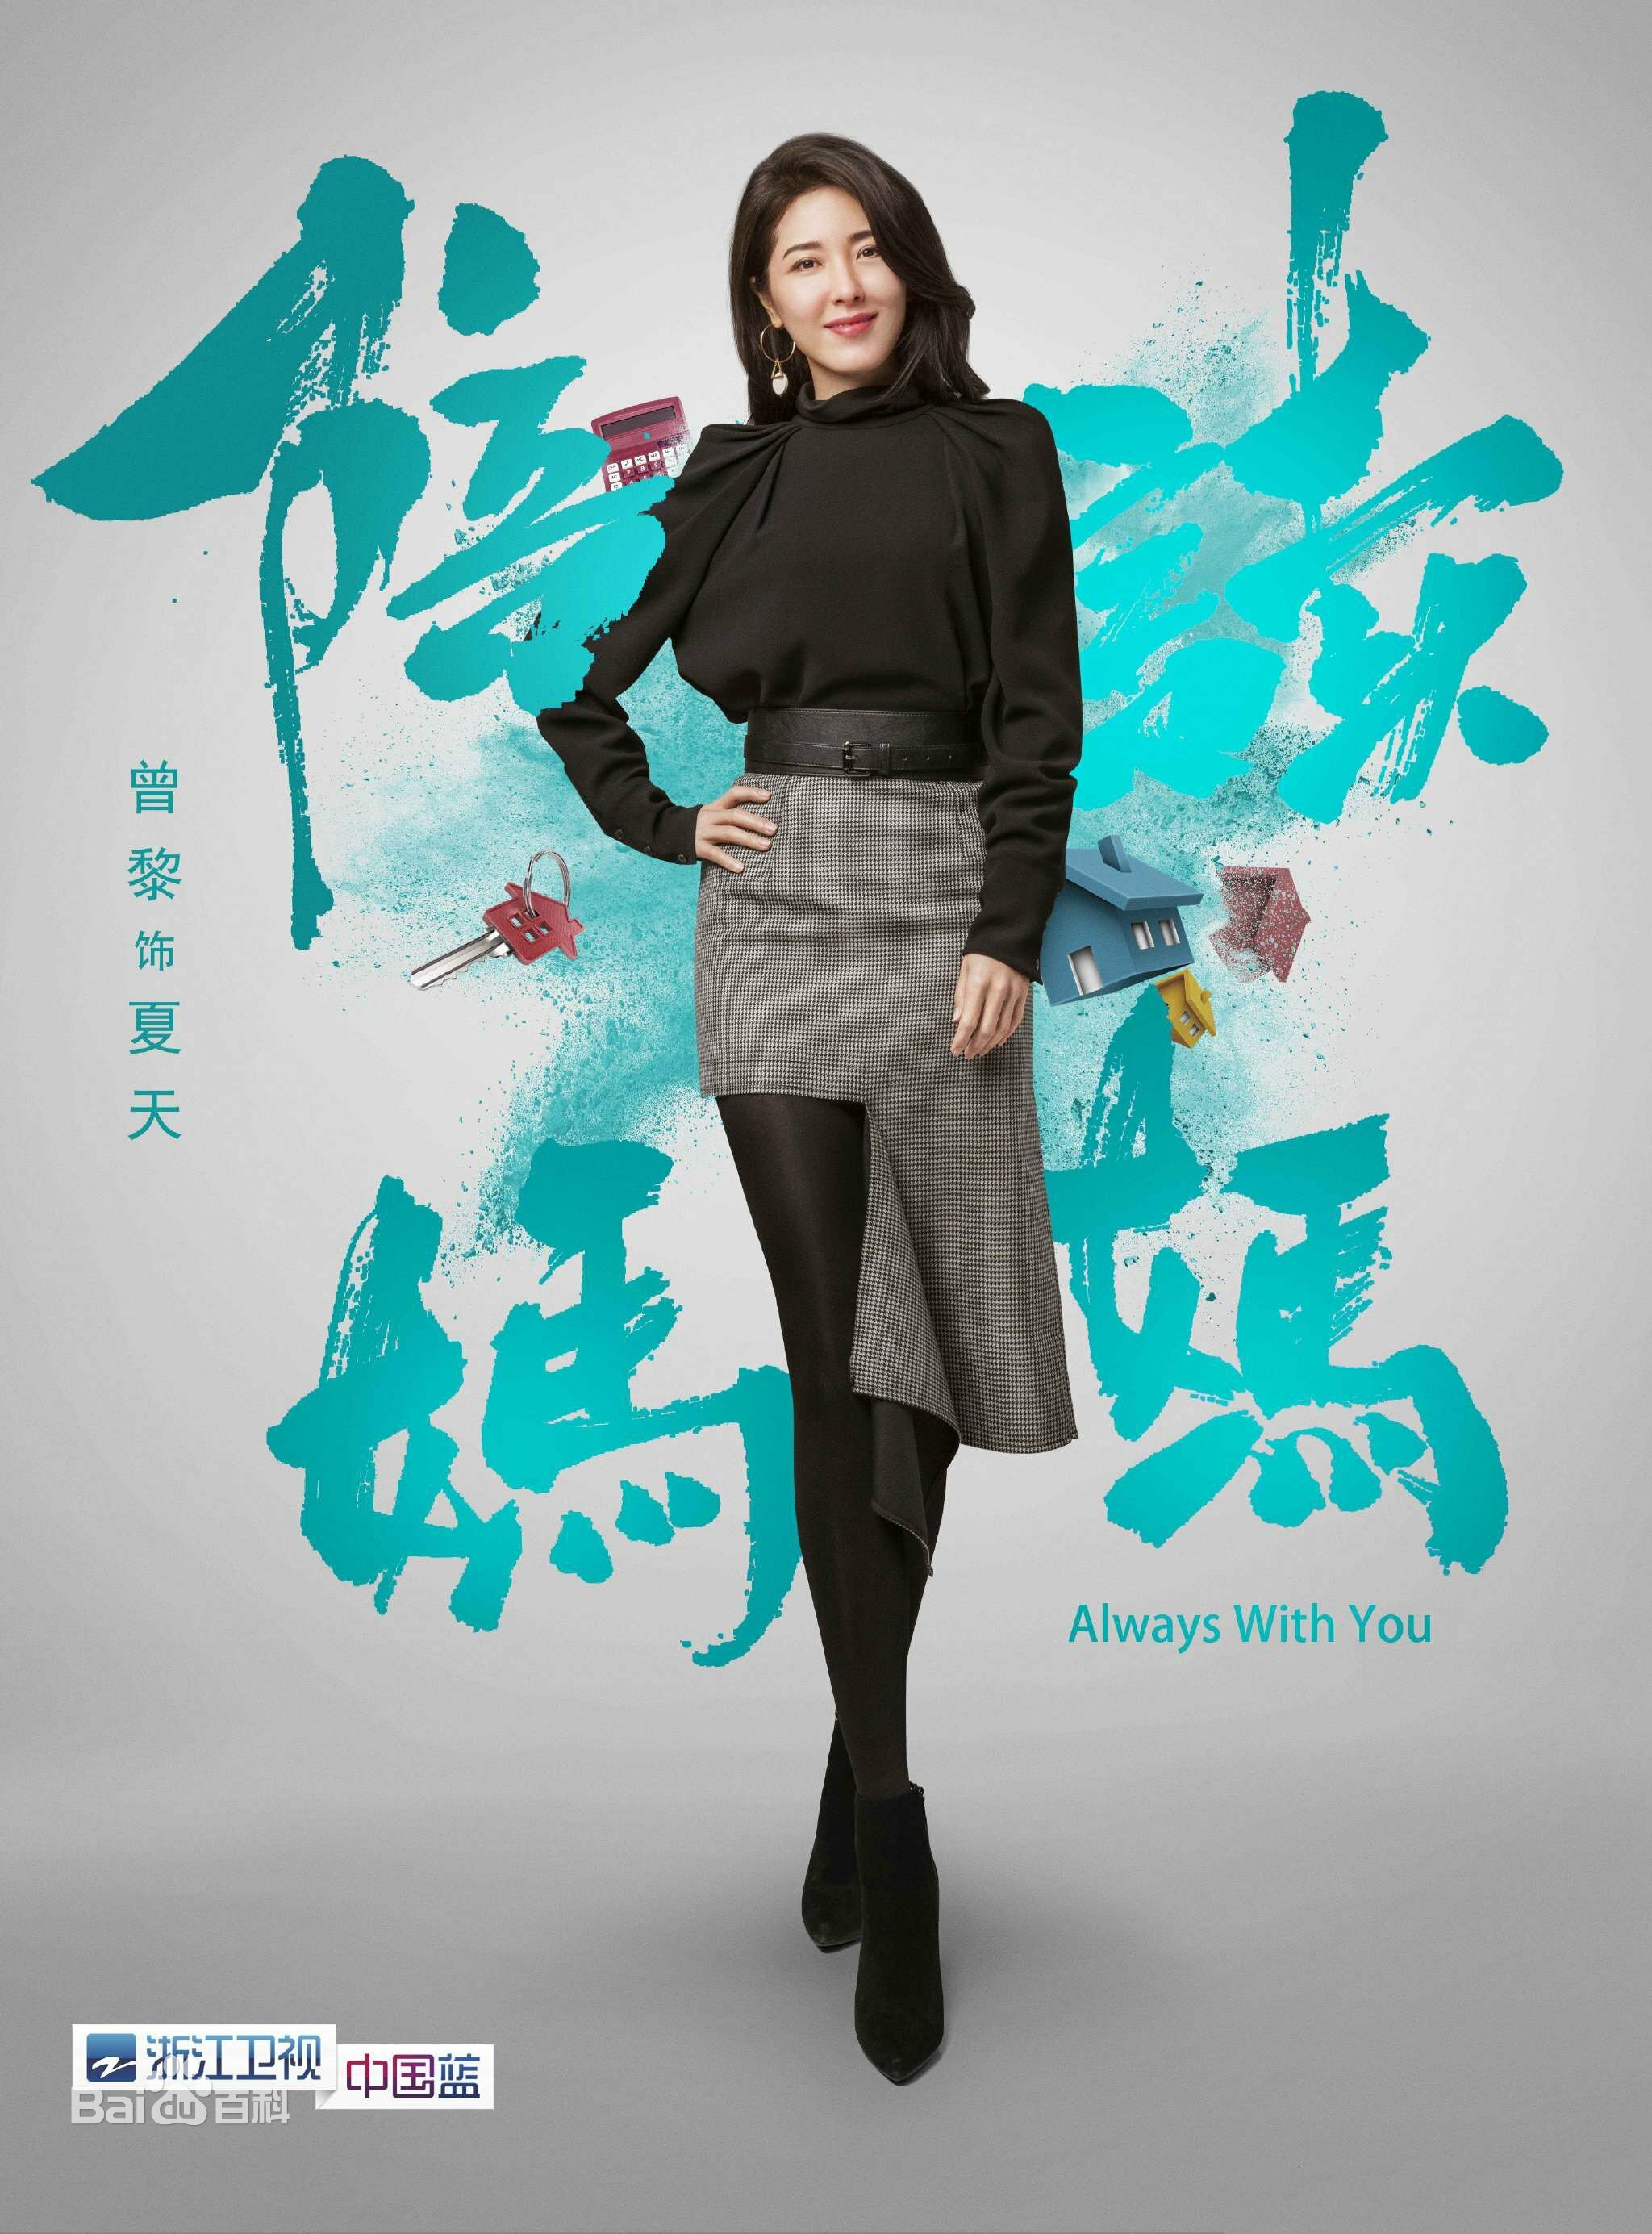 Xia Tian